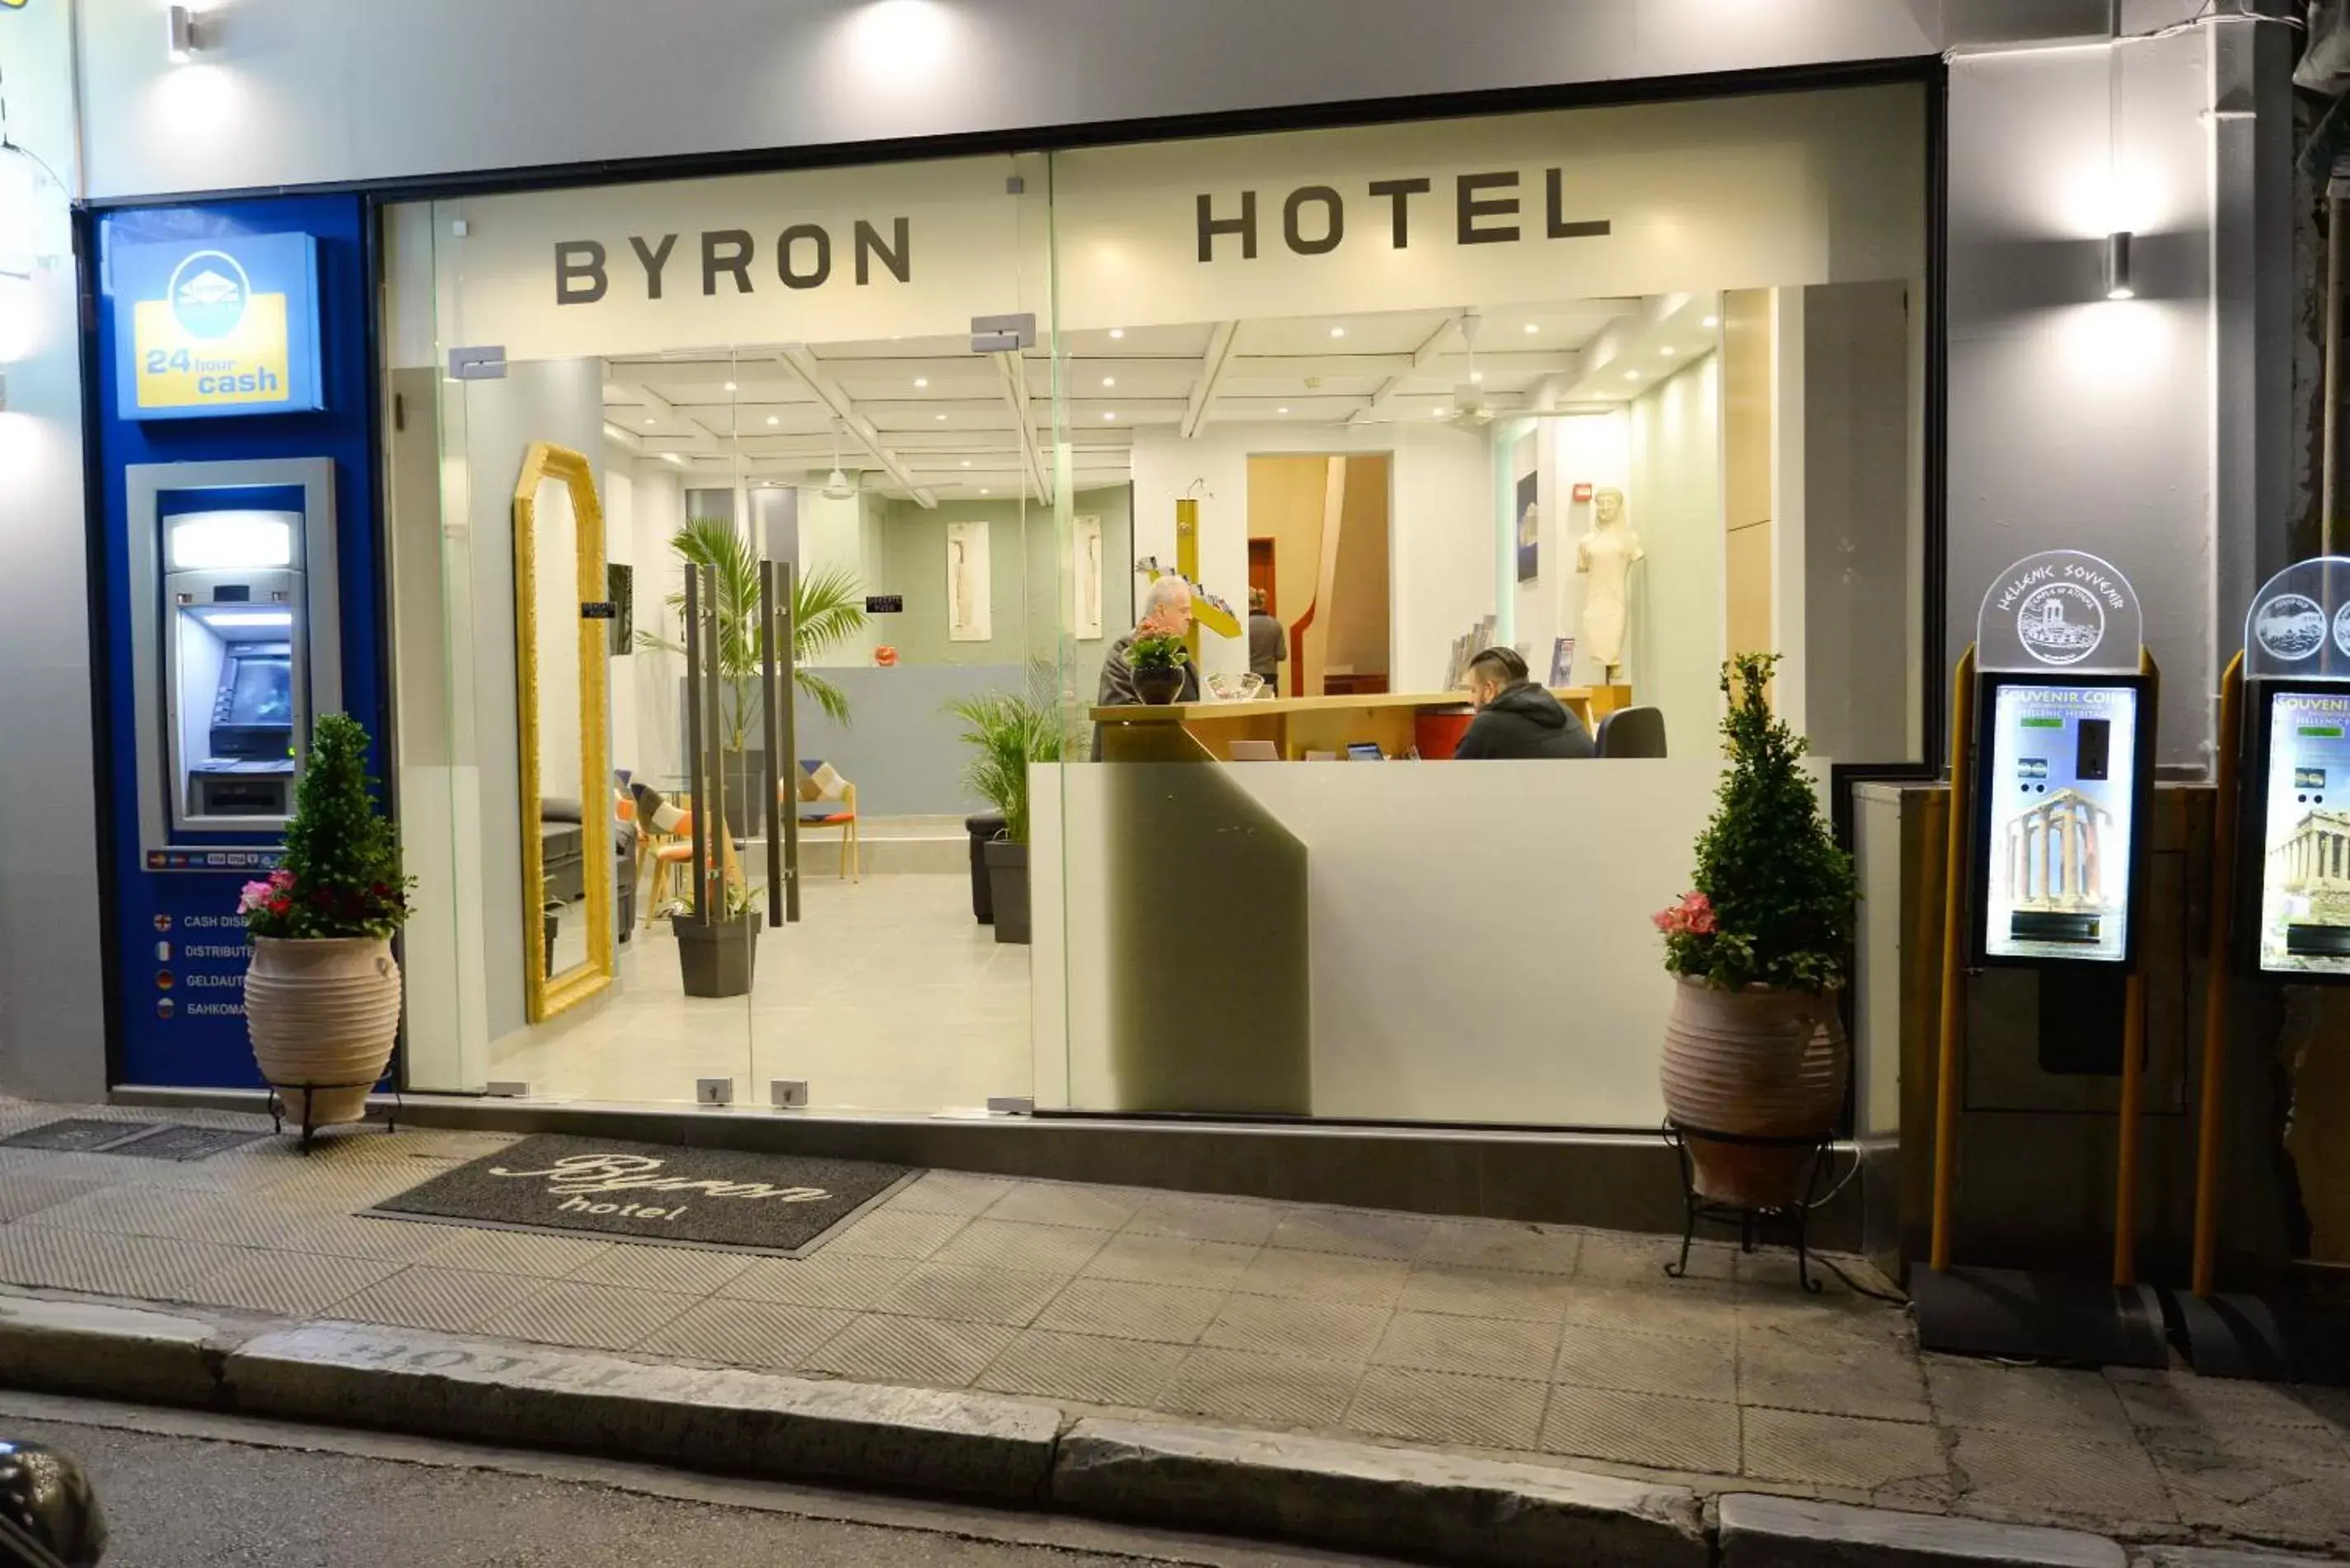 Lobby or reception in Hotel Byron